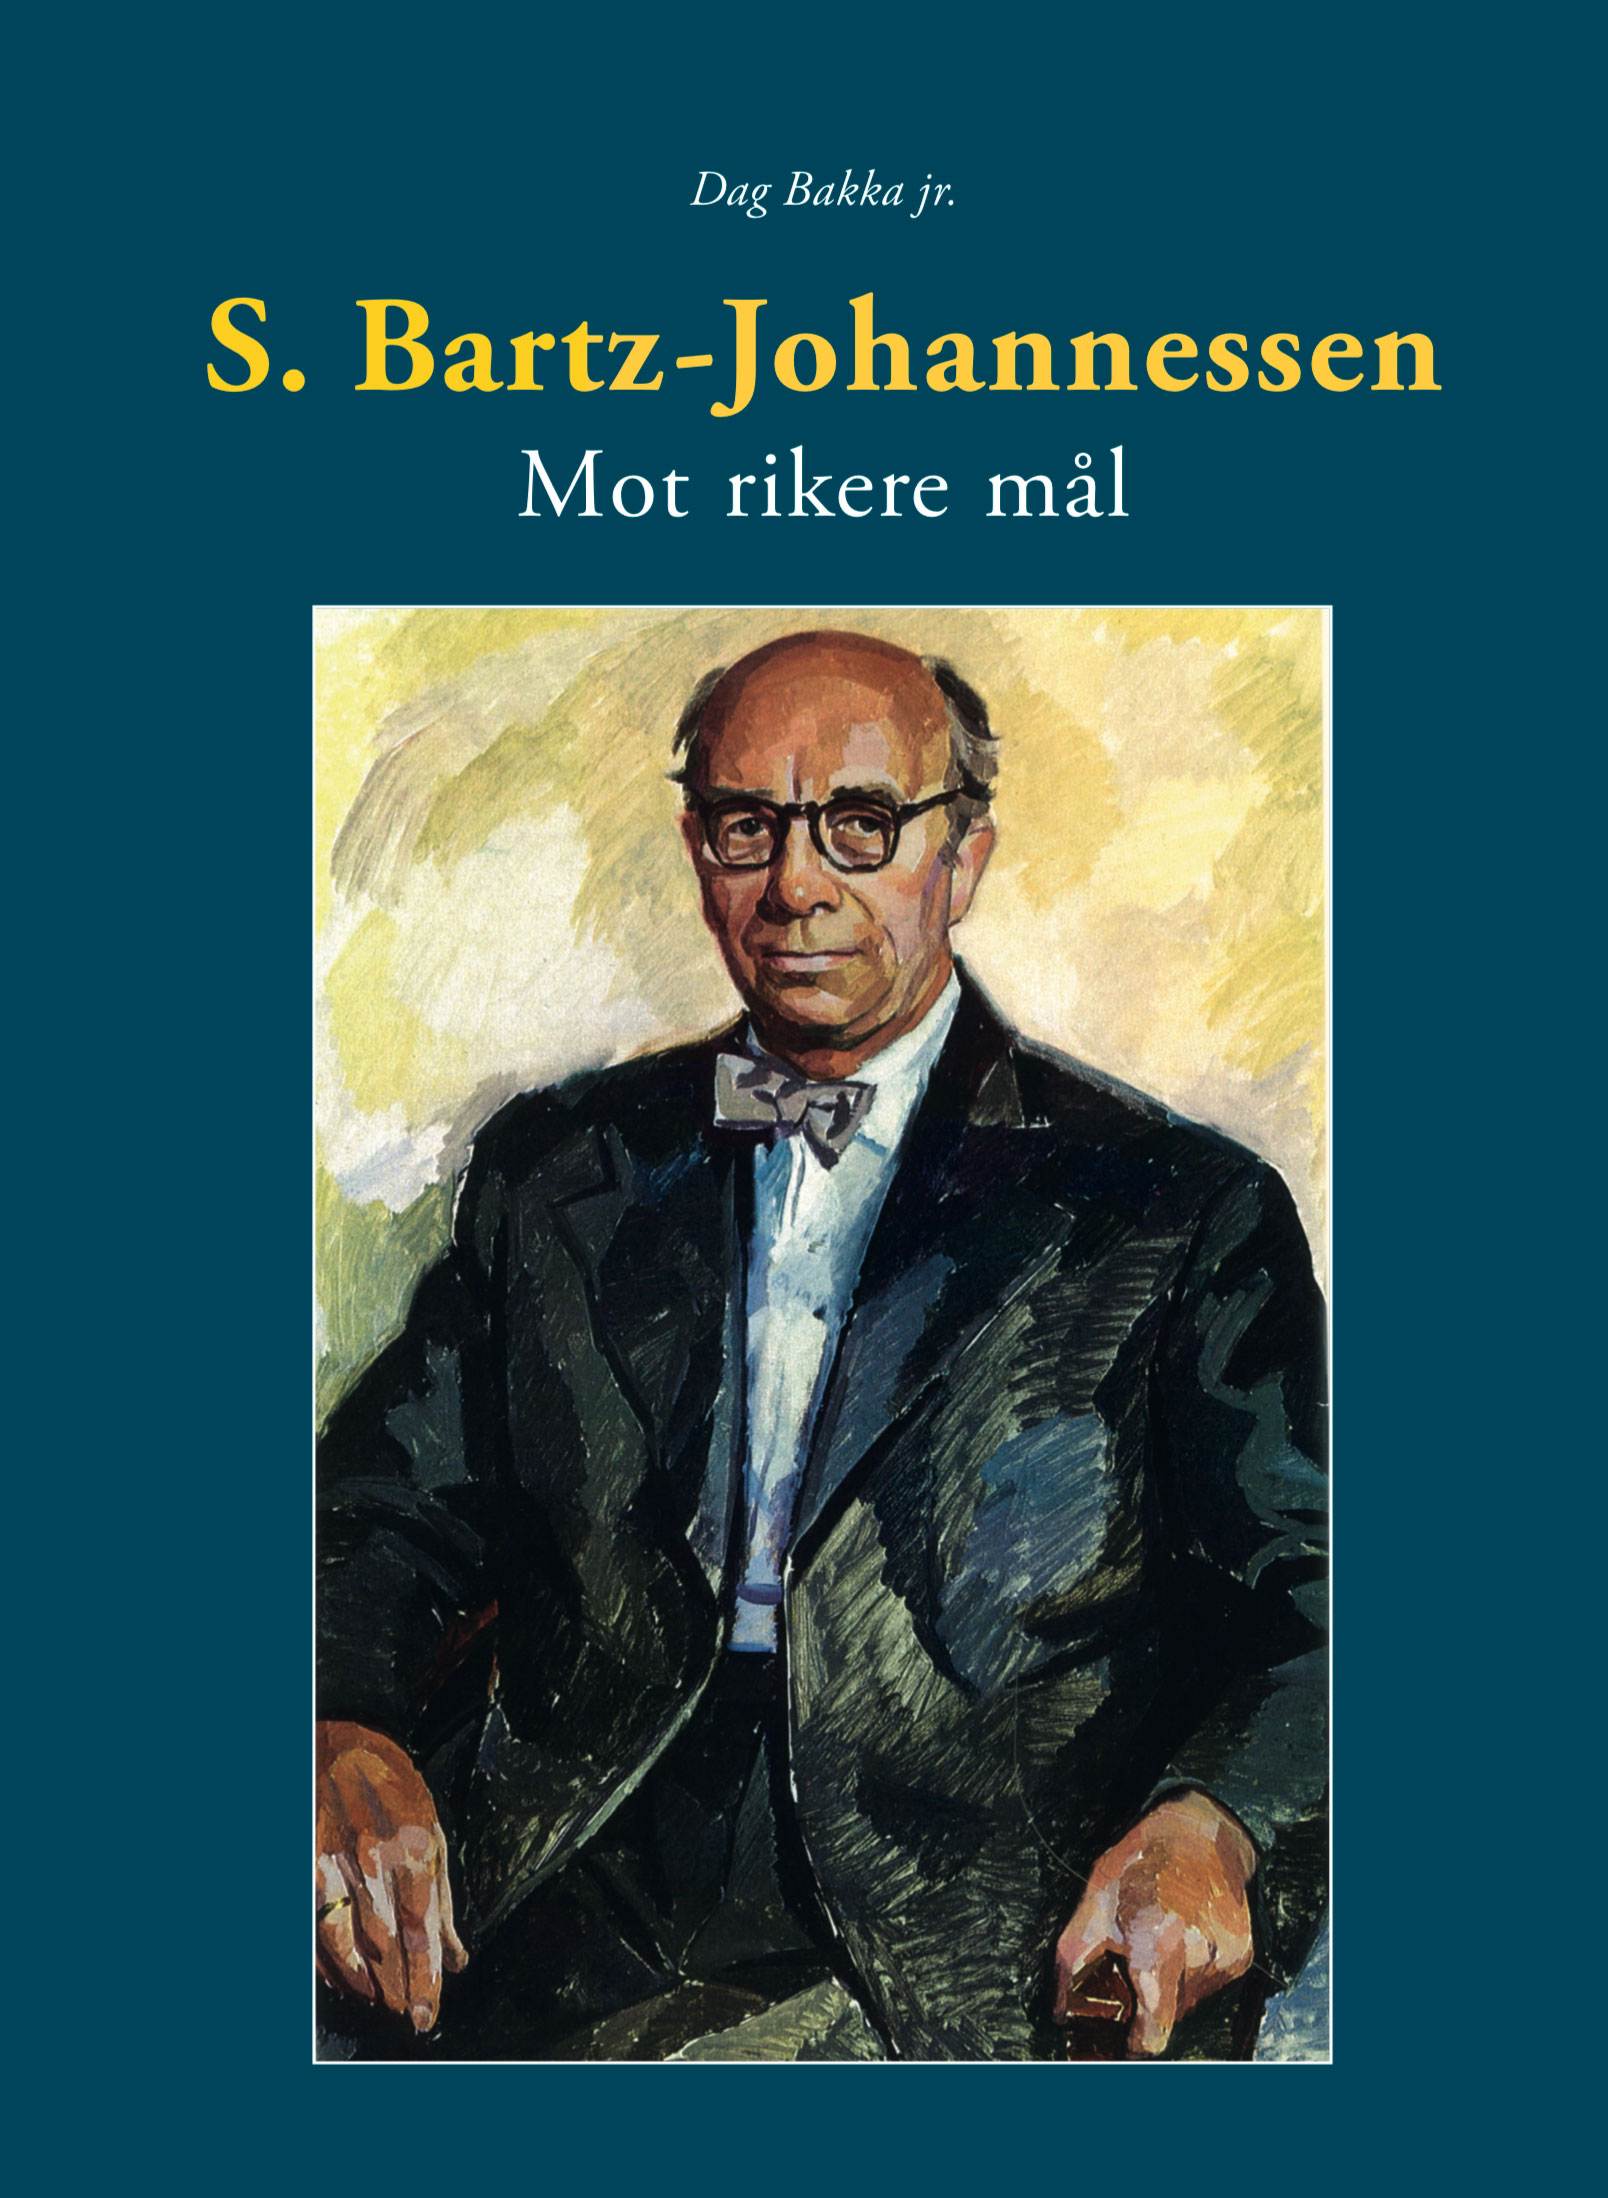 S. Bartz-Johannessen